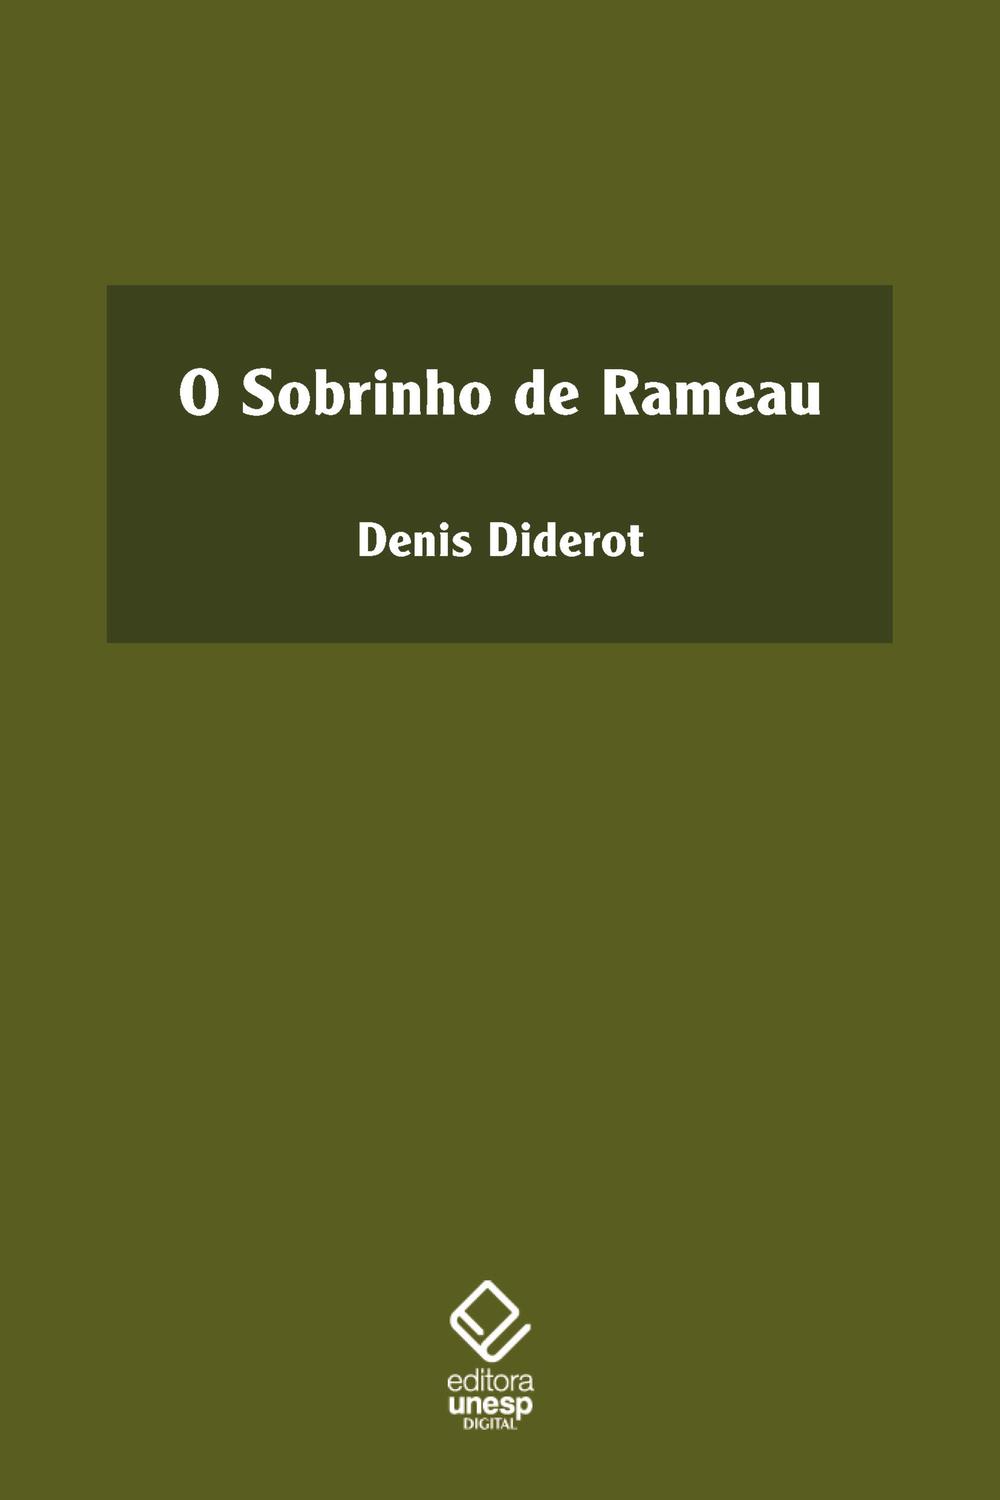 O sobrinho de Rameau - Denis Diderot